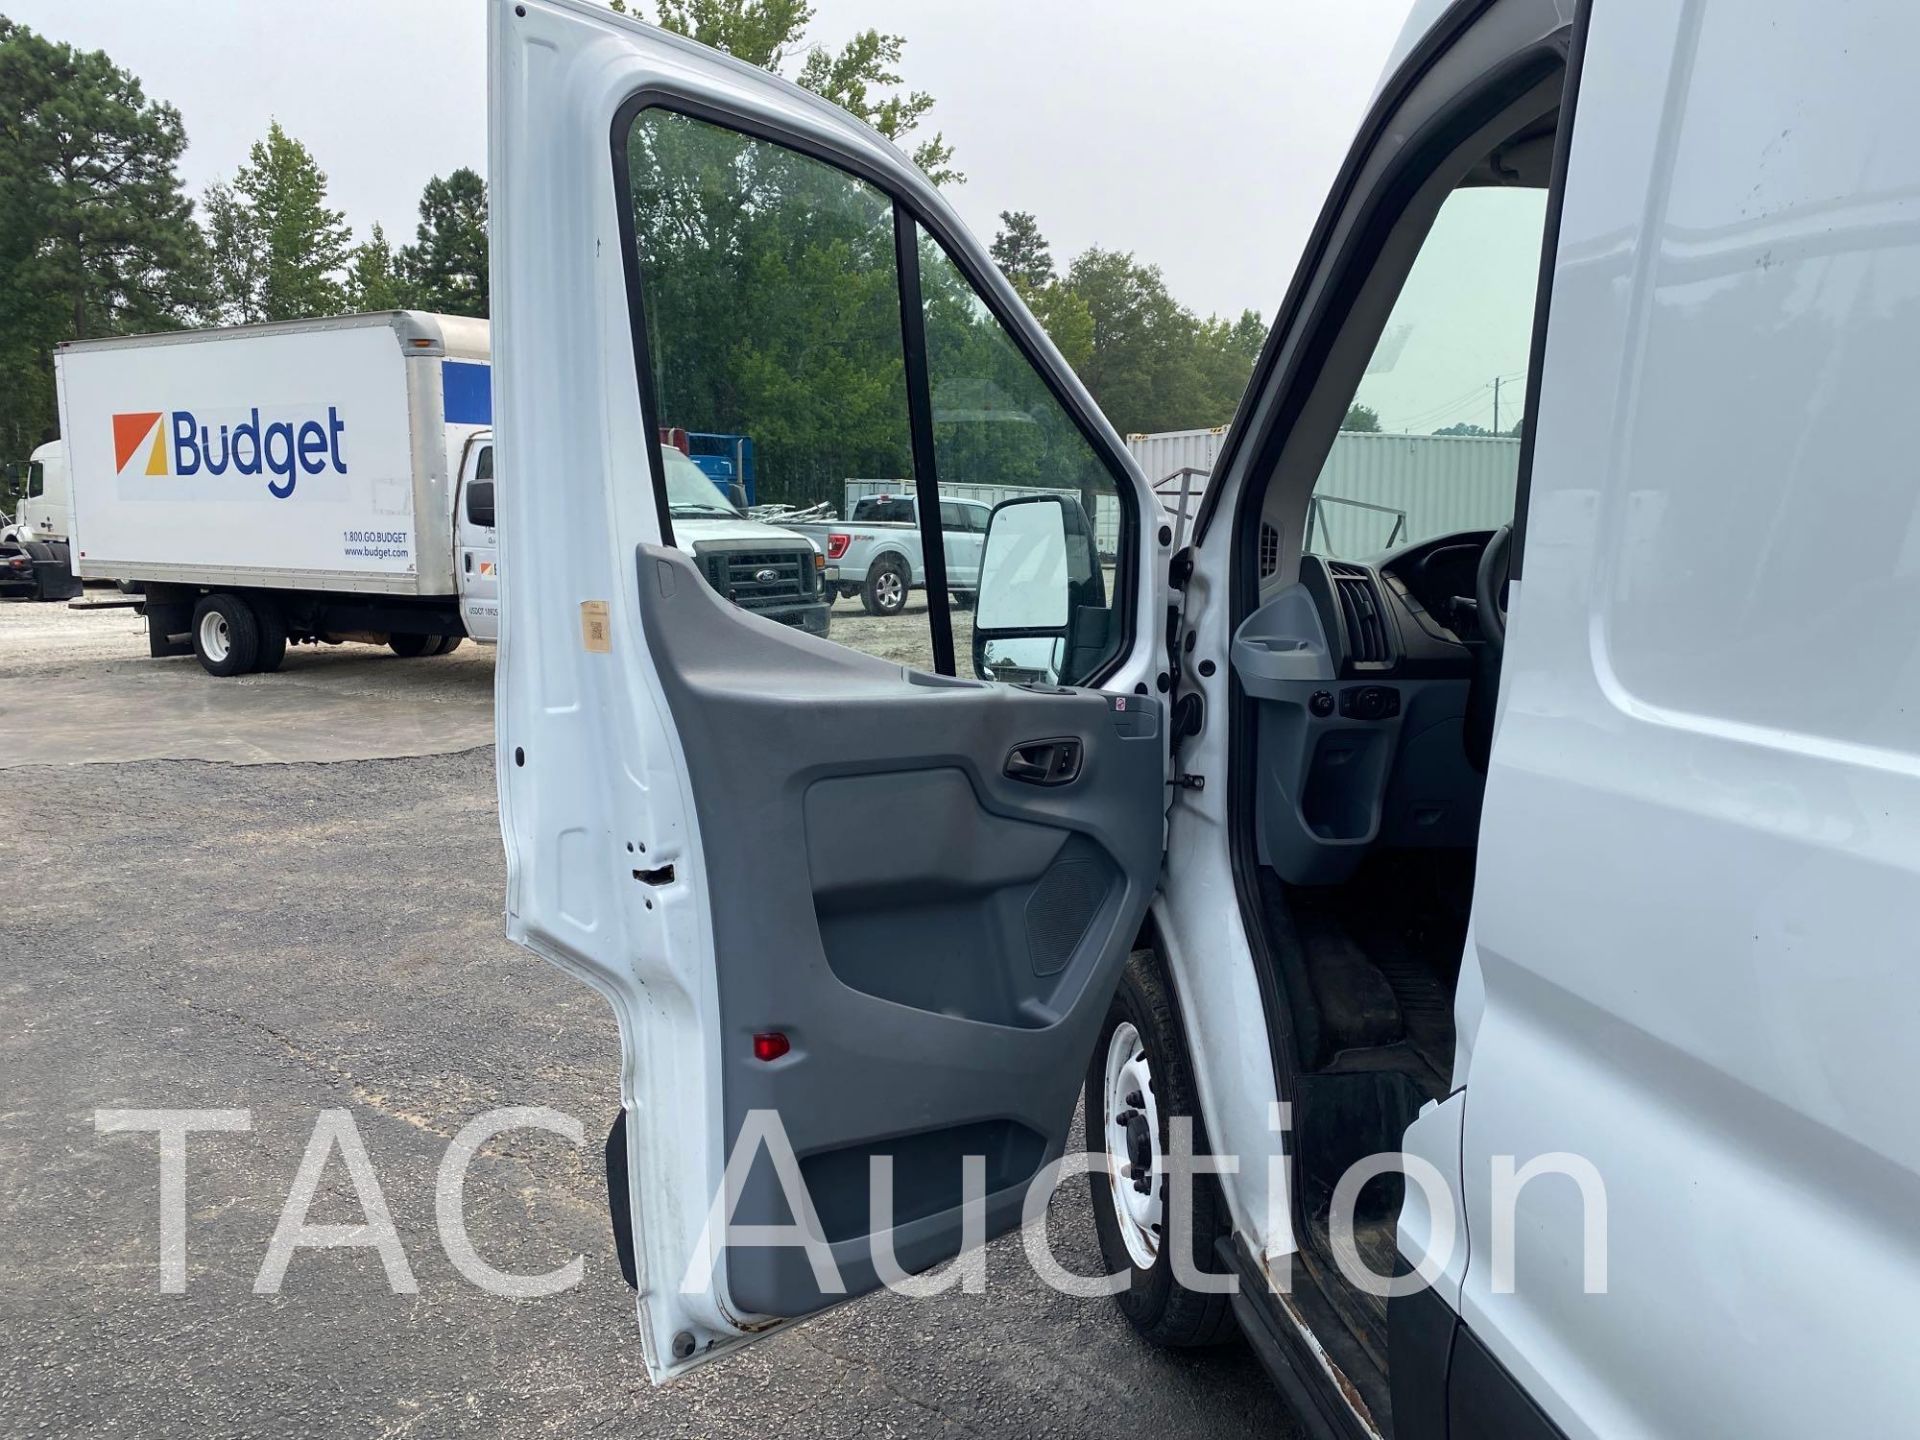 2019 Ford Transit 150 Cargo Van - Image 7 of 52